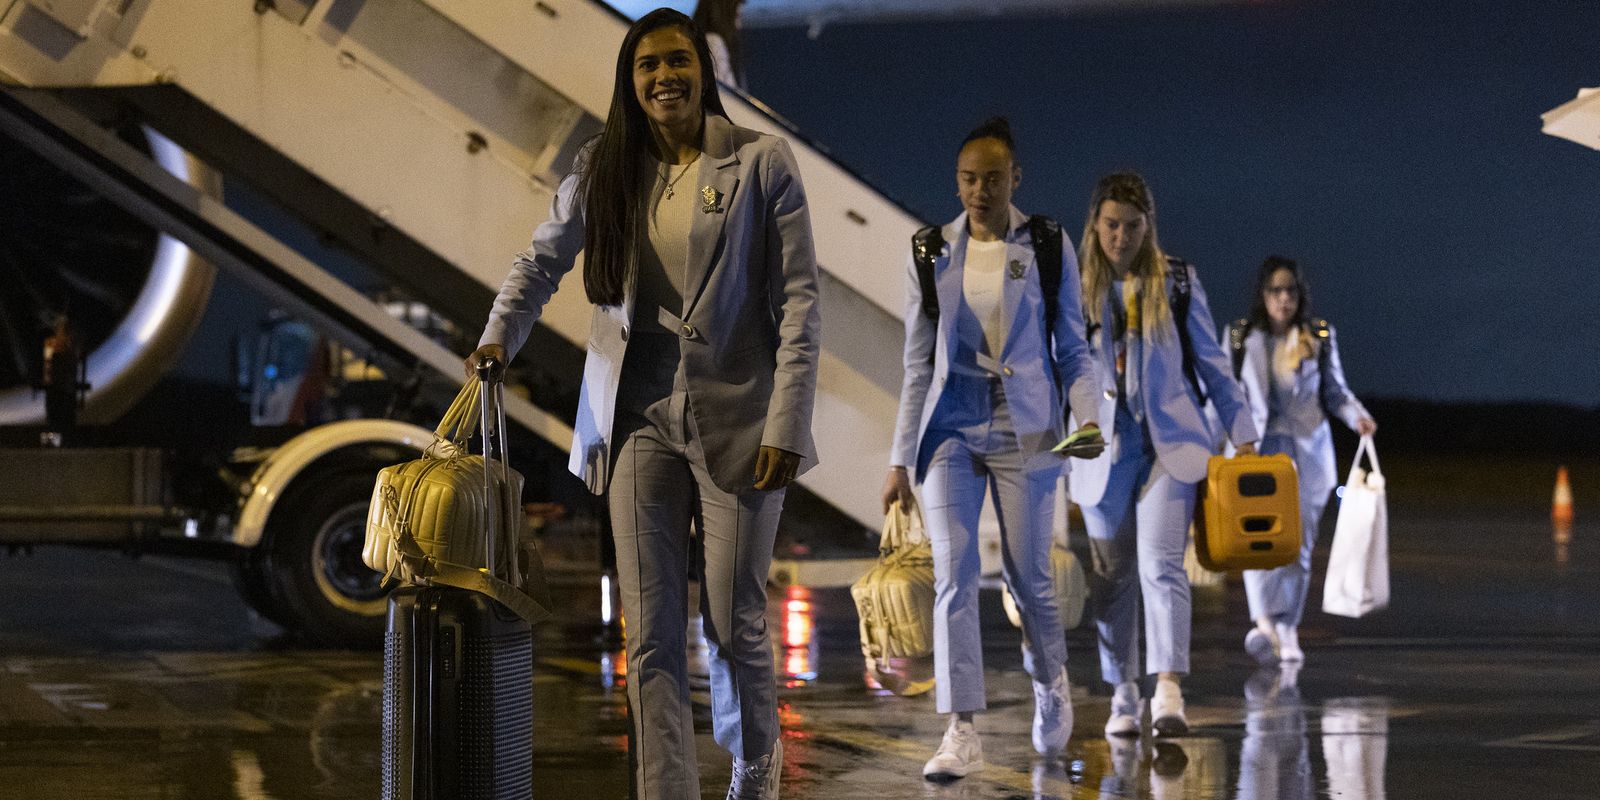 L’équipe nationale du Brésil arrive en Australie pour la Coupe du monde féminine